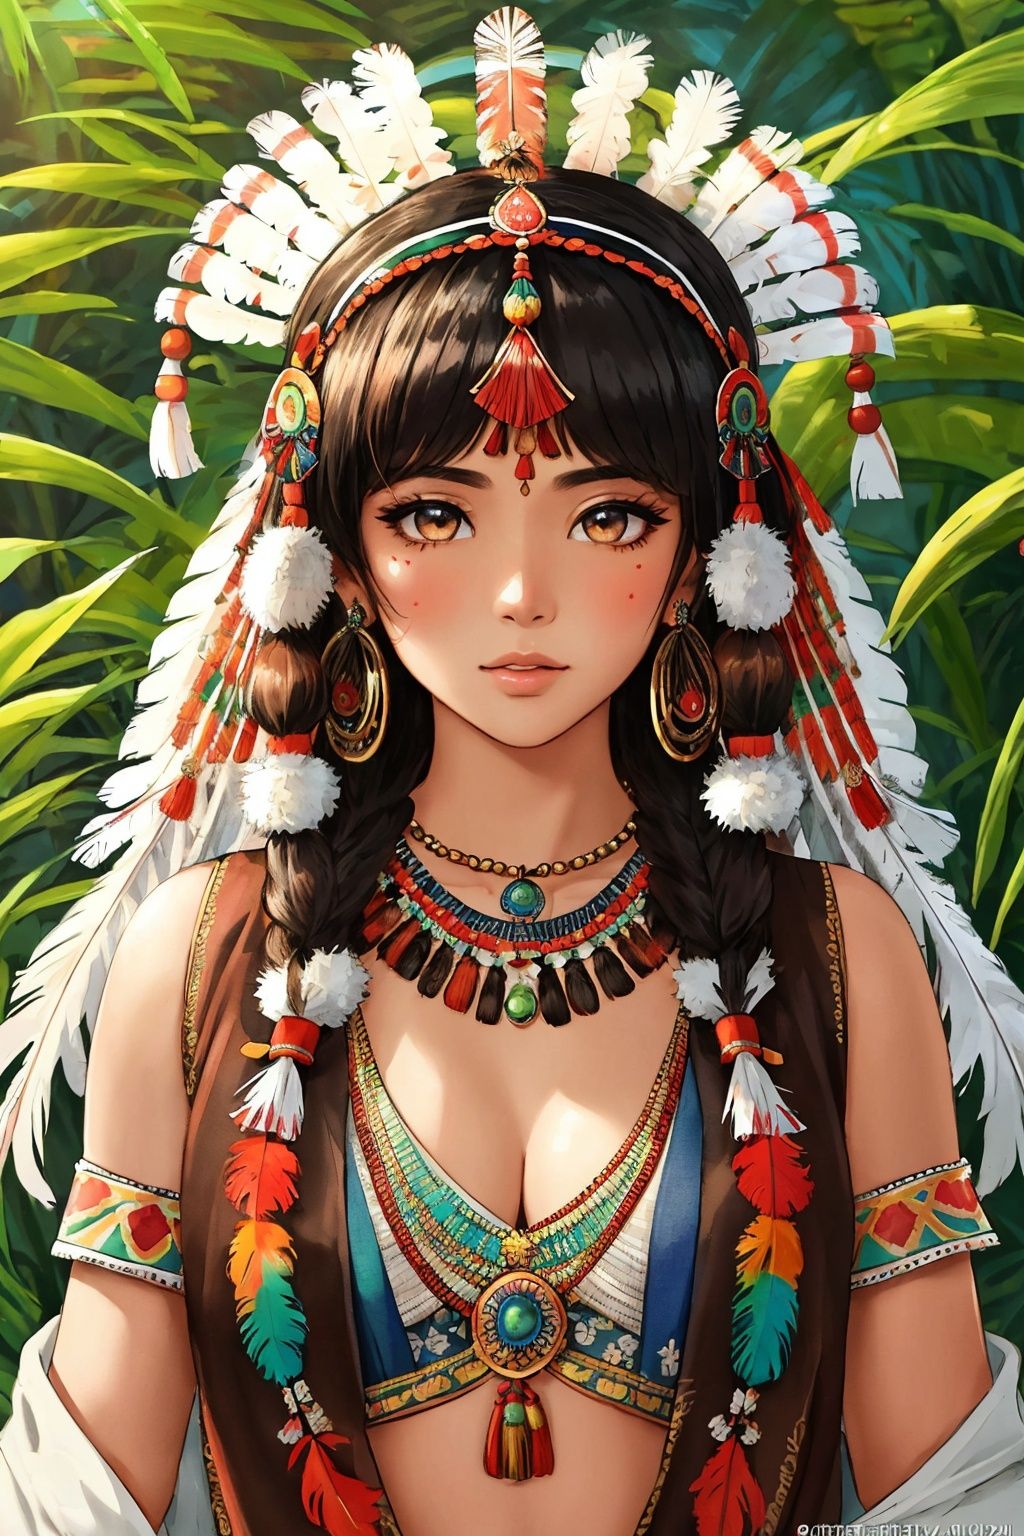 我的文件助手 16:17:37
(((best quality))),(((highly detailed))),(((masterpiece))),(((ultra-detailed))),(((illustration))),(((extremely detailed))),((exciting)), Native Indian, 1 Indian girl, whole body, (((Indian feather headdress))), Indian necklace, delicate and beautiful face, graffiti on the face, beautiful eyes, watercolor, splash ink, brown crystal eyes, highlight, tropical plants, macaws, highlight, rich pictures, ultra clear, perfect, high-definition, 8k

我的文件助手 16:17:39
(((best quality))),(((highly detailed))),(((masterpiece))),(((ultra-detailed))),(((illustration))),(((extremely detailed))),((exciting)), Native Indian, 1 Indian girl, whole body, (((Indian feather headdress))), Indian necklace, delicate and beautiful face, graffiti on the face, beautiful eyes, watercolor, splash ink, brown crystal eyes, highlight, tropical plants, macaws, highlight, rich pictures, ultra clear, perfect, high-definition, 8k

